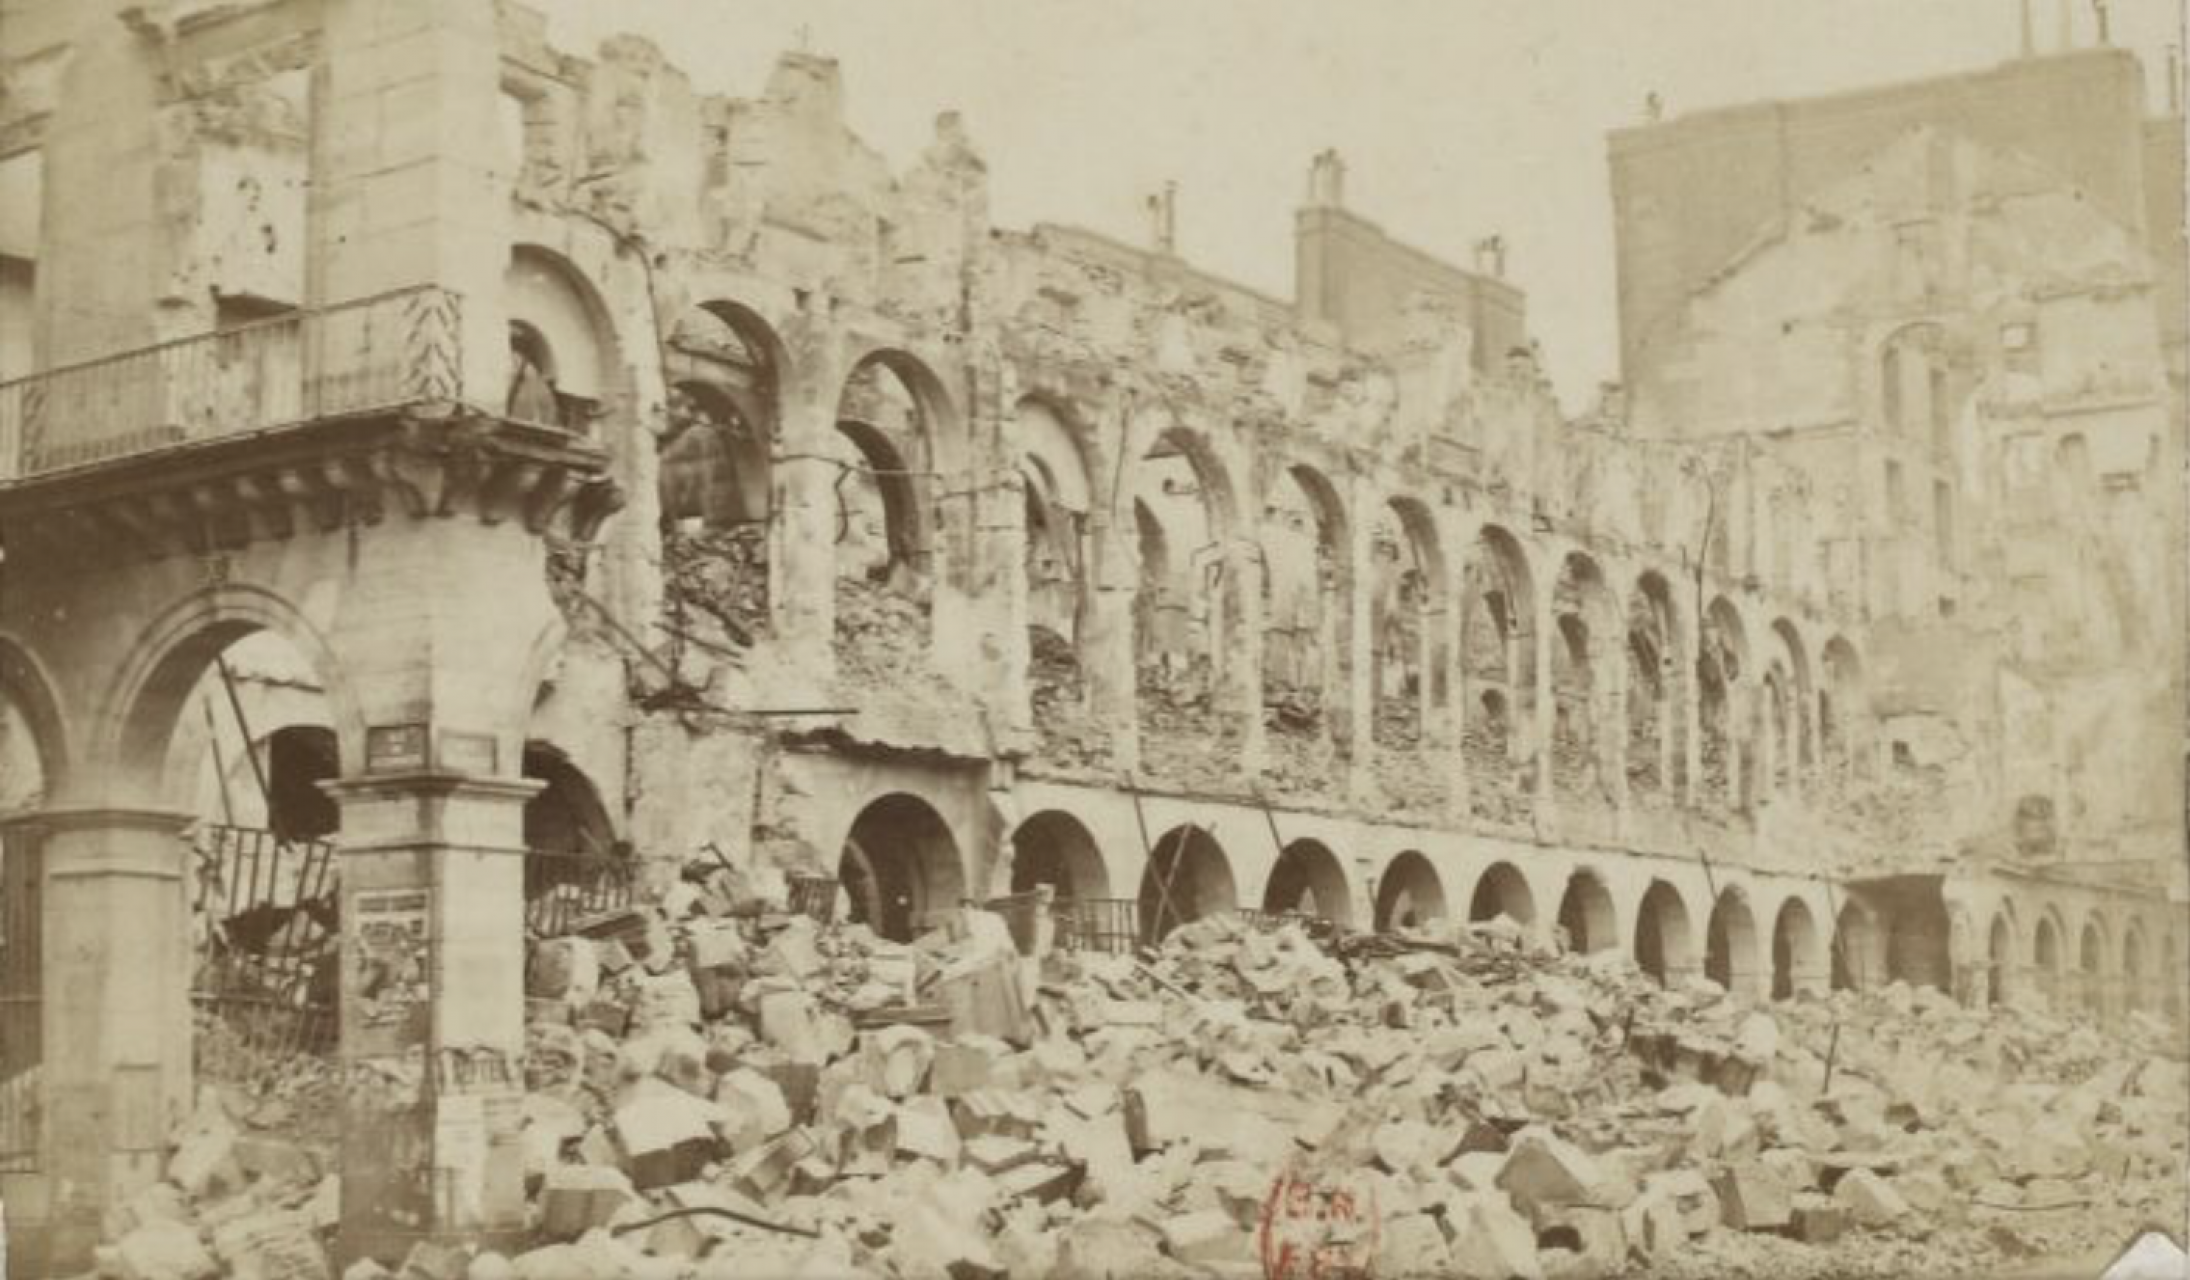 Ministère des Finances, photographie anonyme, [recueil] Ruines de Paris, mai 1871, BnF/Gallica.